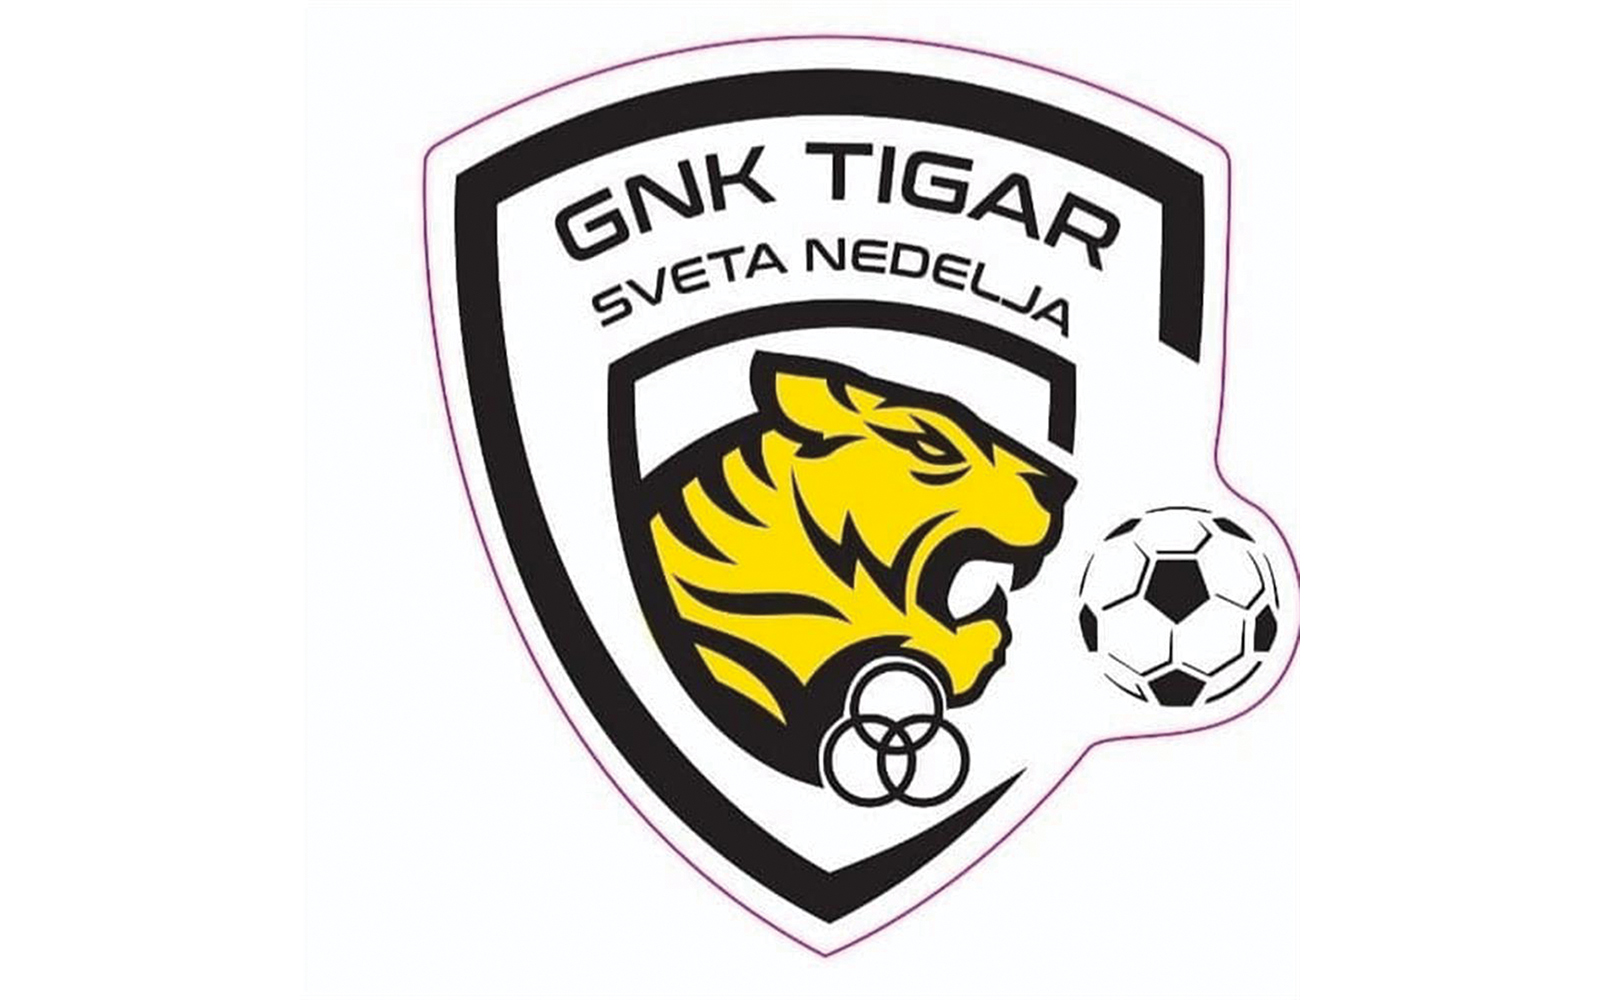 4. nogometna liga središte Zagreb – B - 24. kolo
GNK Tigar Sveta Nedelja – Moslavina 0:3 (0:2)